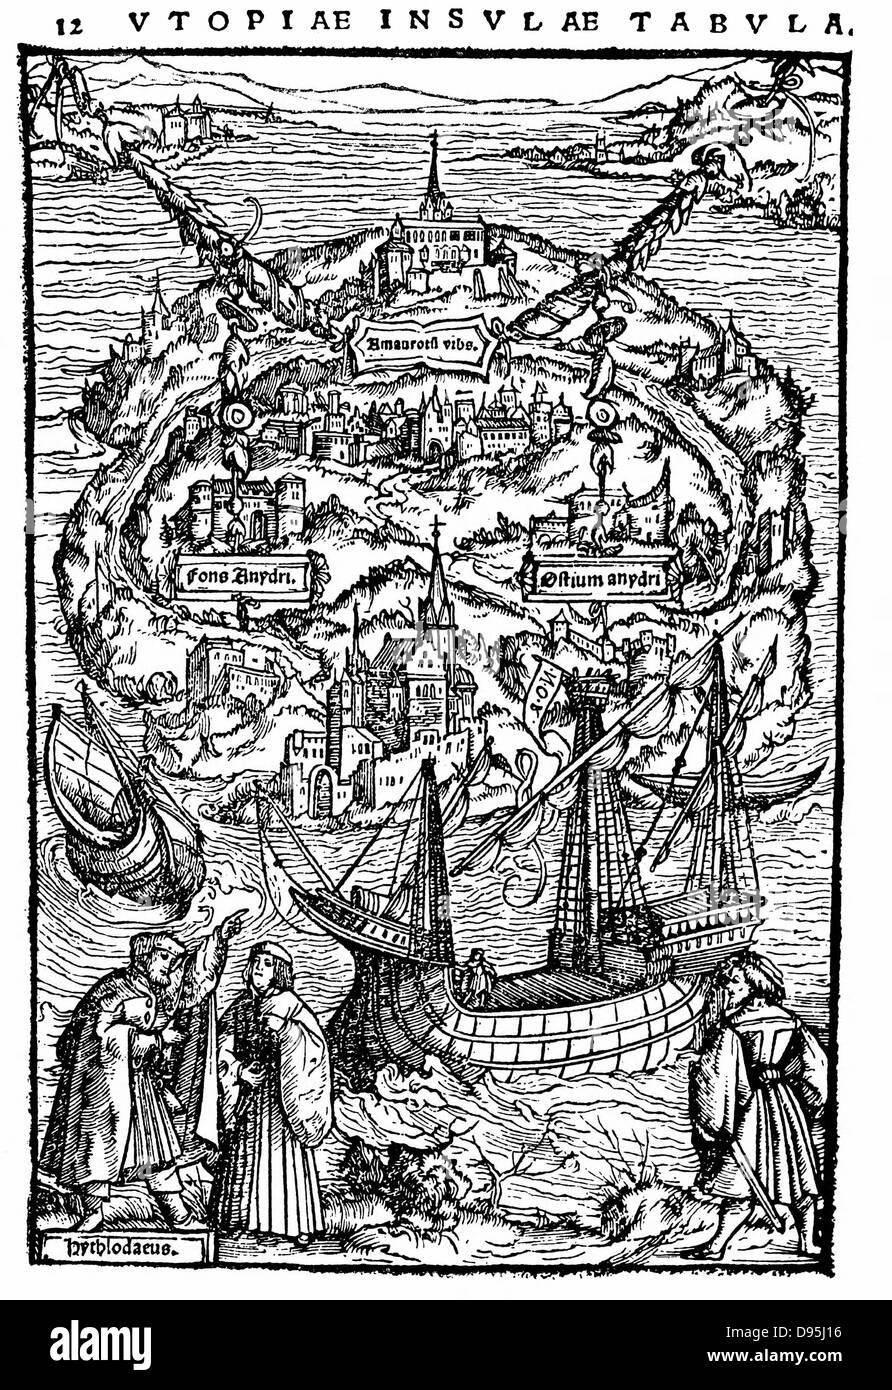 Piano dell'isola dell'Utopia. Da Thomas Moore di lavoro che raffigura lo stato ideale dove la ragione ha dichiarato, "Utopia" 1518 (IST edizione 1516) xilografia. Foto Stock